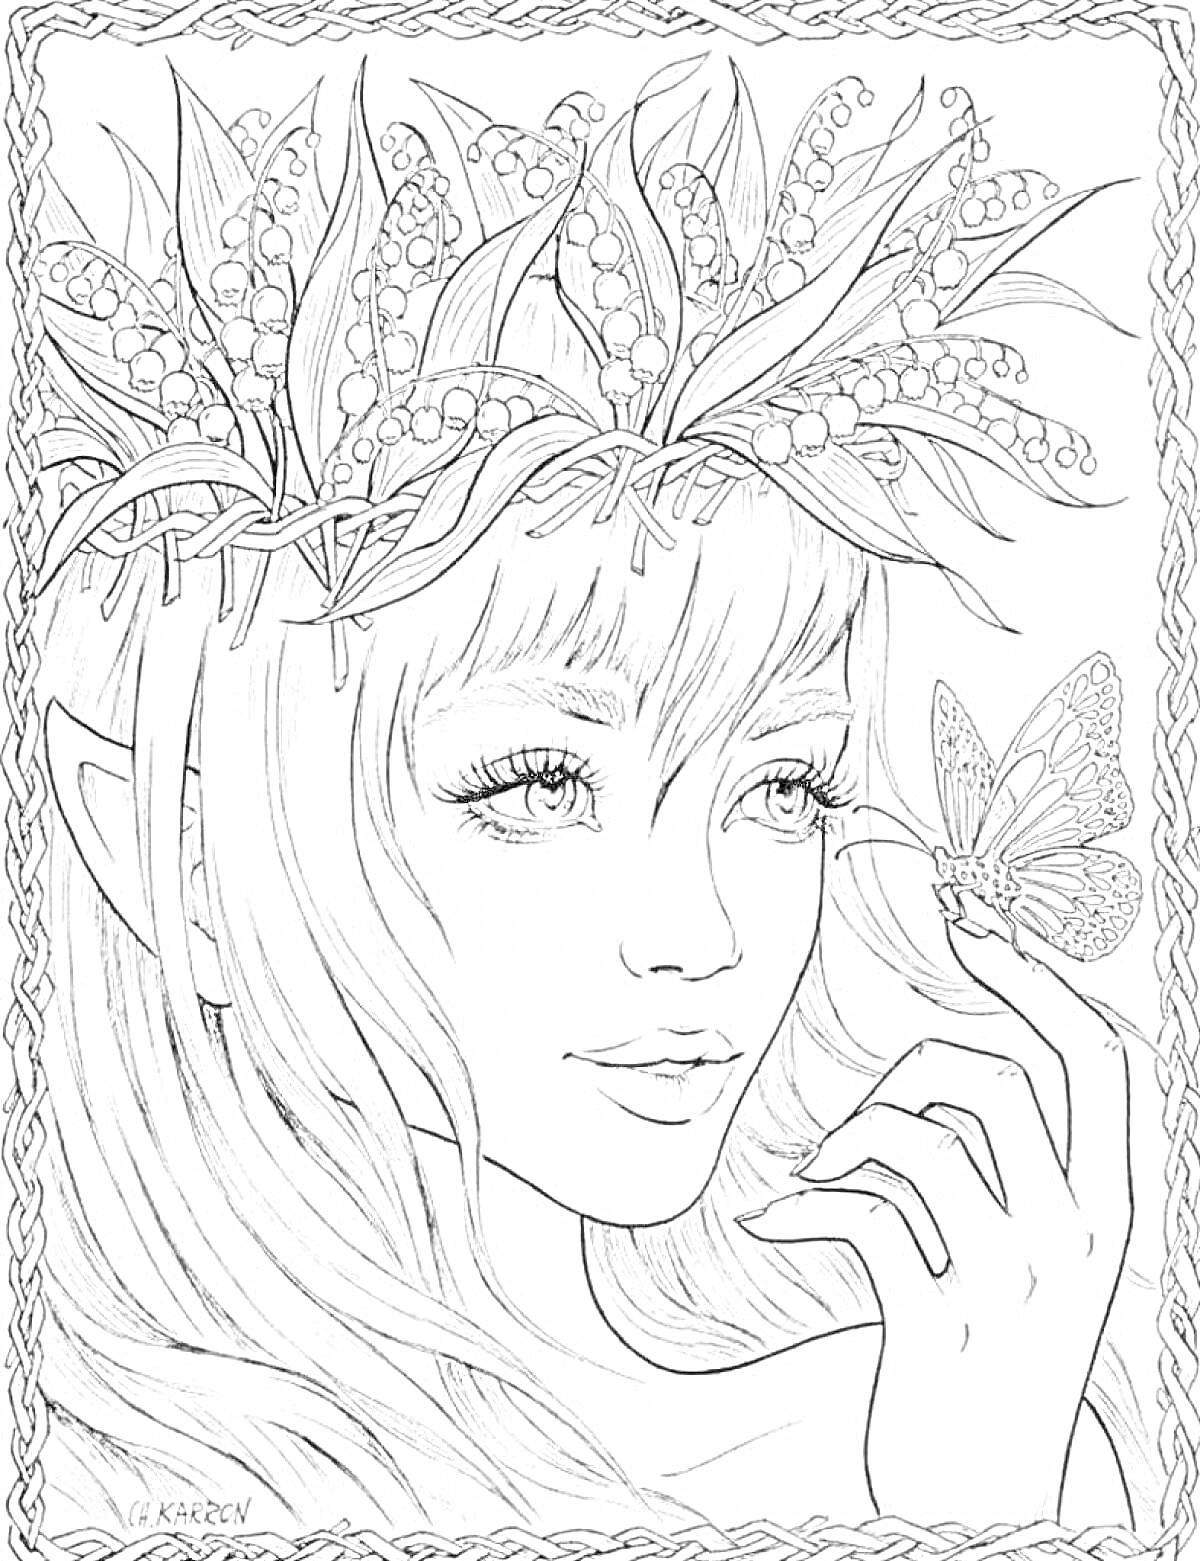 Раскраска Девушка с венком из листьев и ягод, бабочка на руке